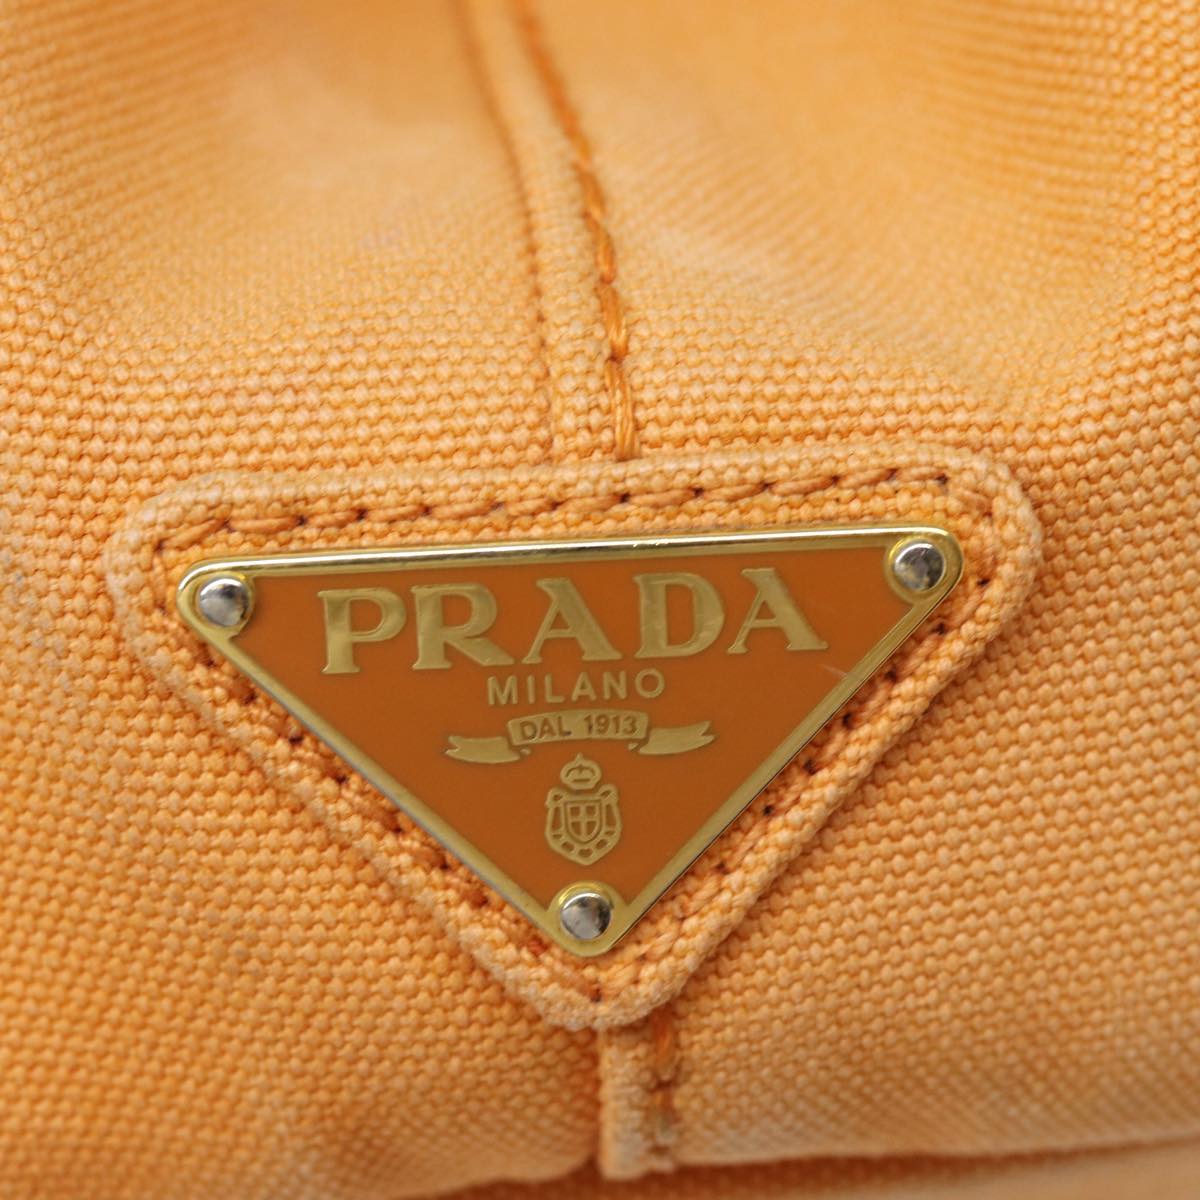 PRADA Canapa MM Hand Bag Canvas Orange Auth 70580